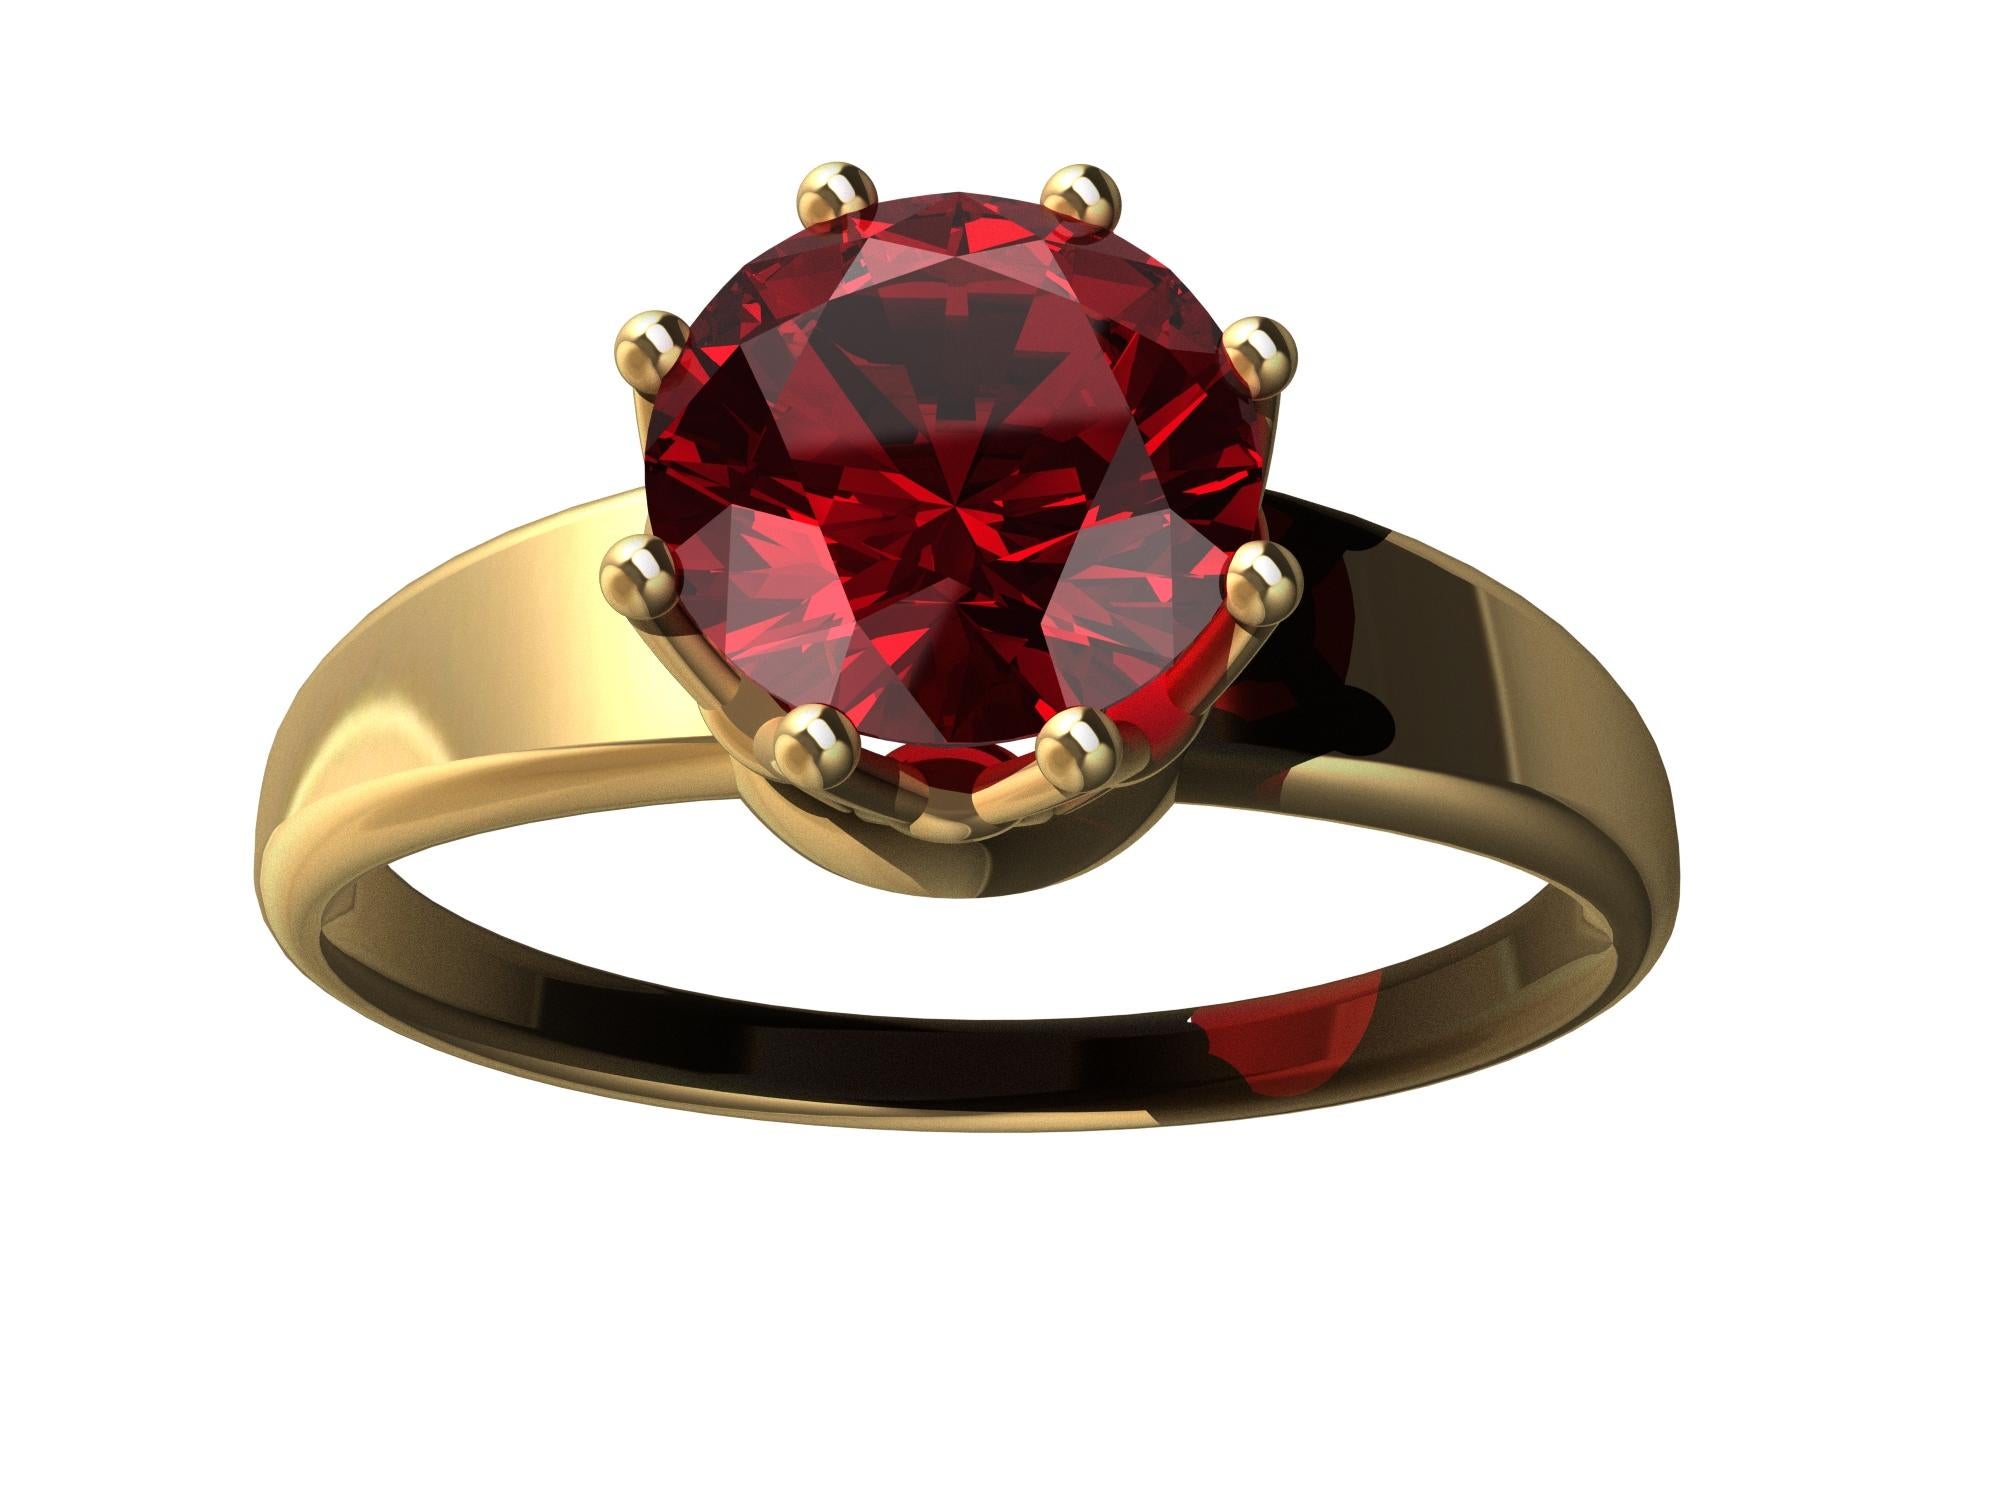 For Sale:  18 Karat Yellow Gold Royal Rhombus Ruby Ring 6